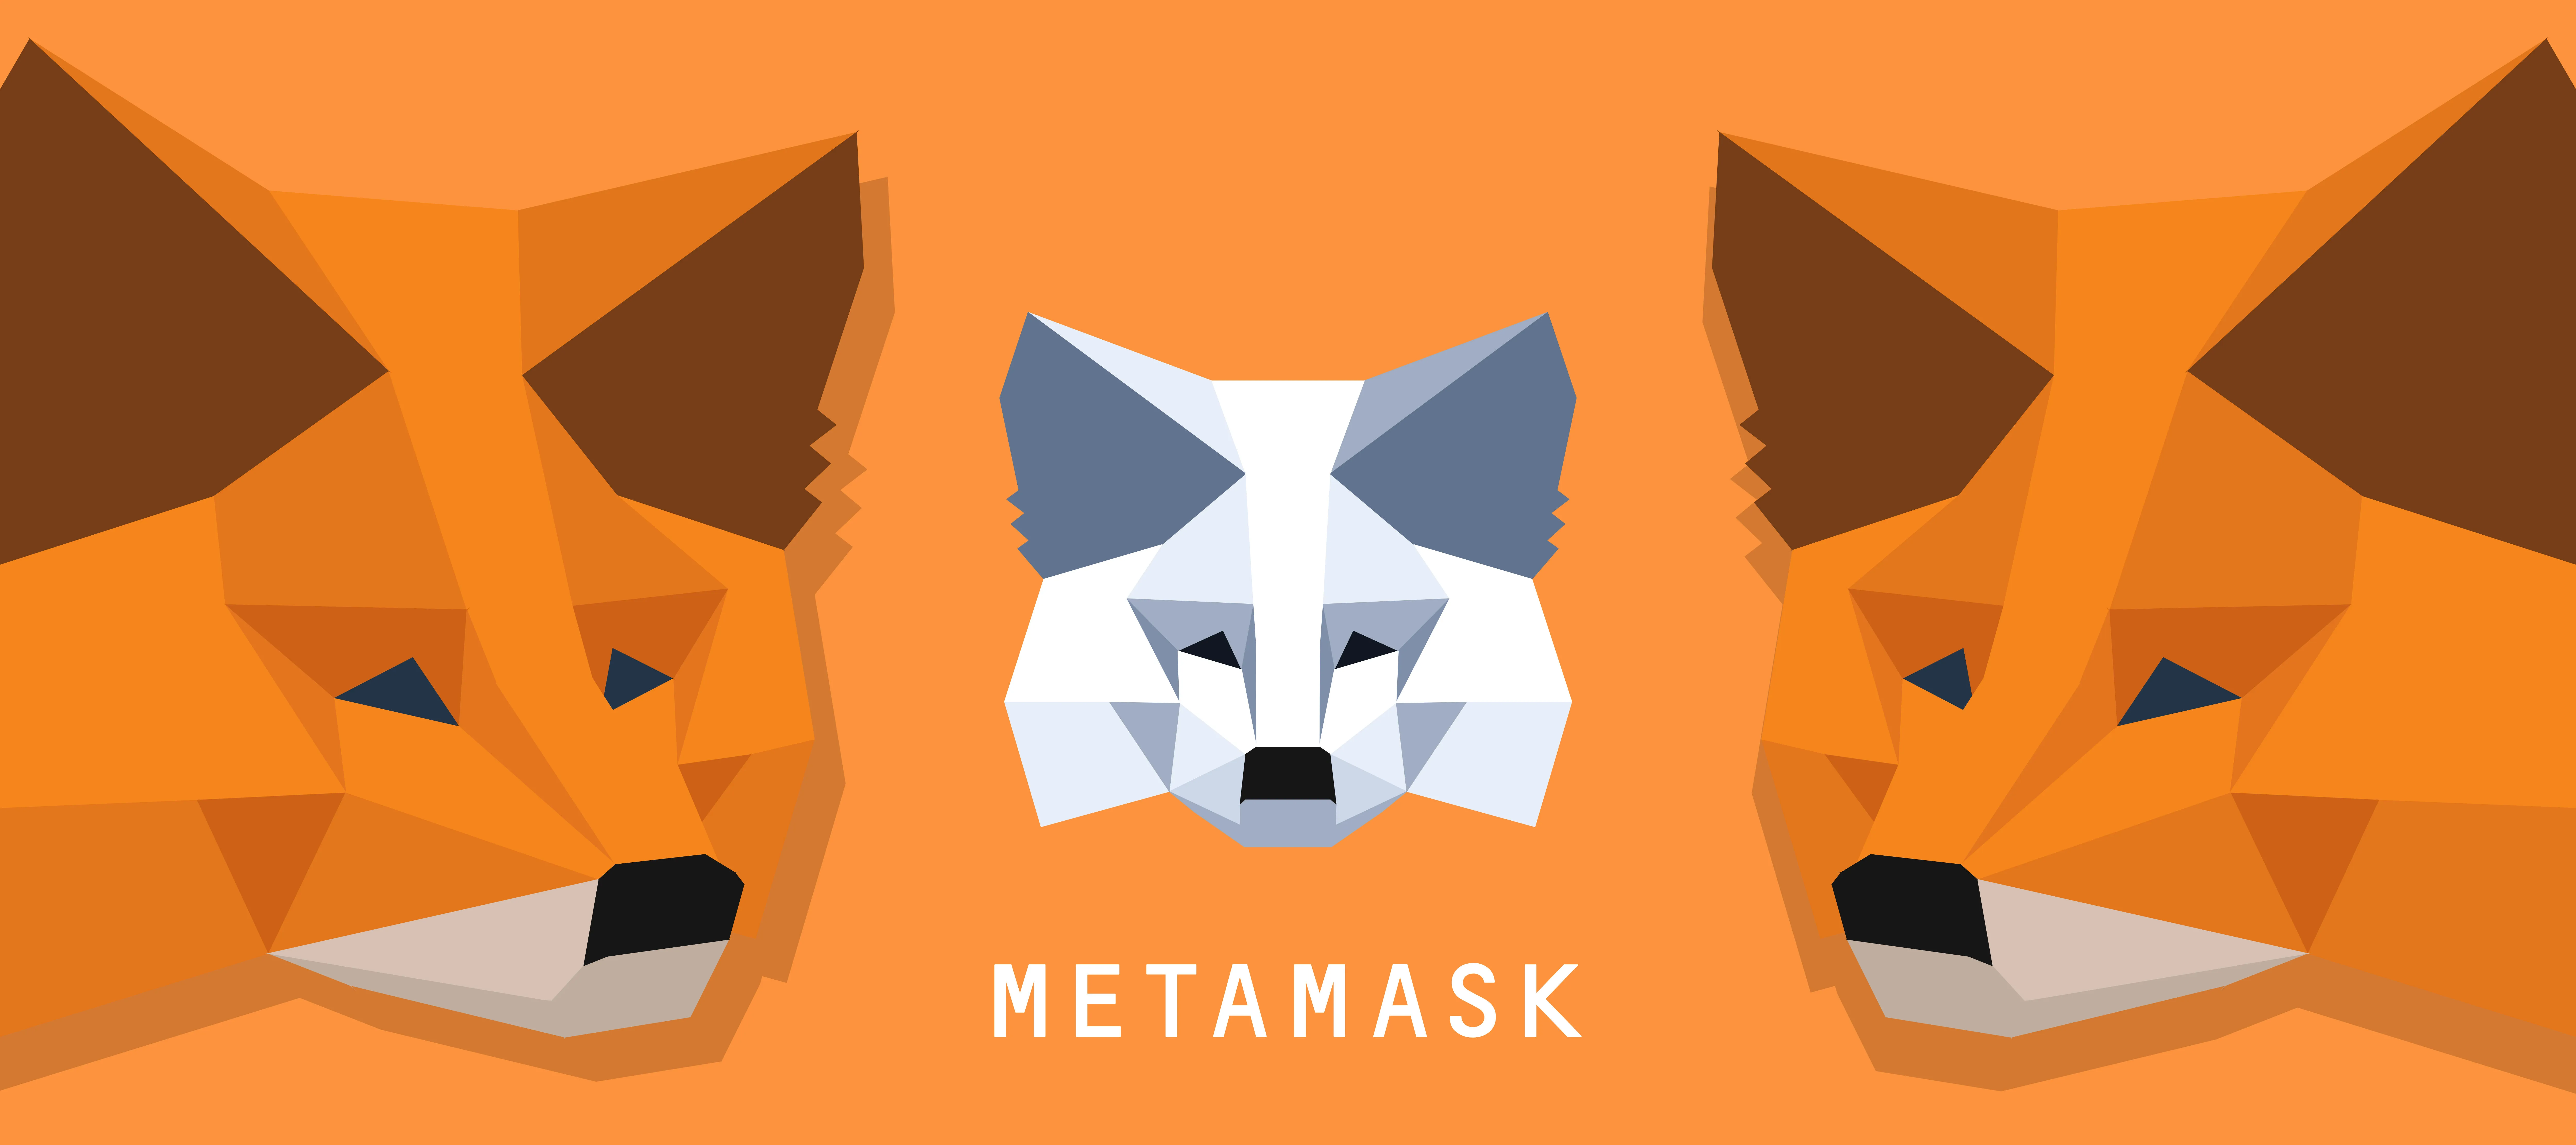 Metamask logotype hnzjf ejc